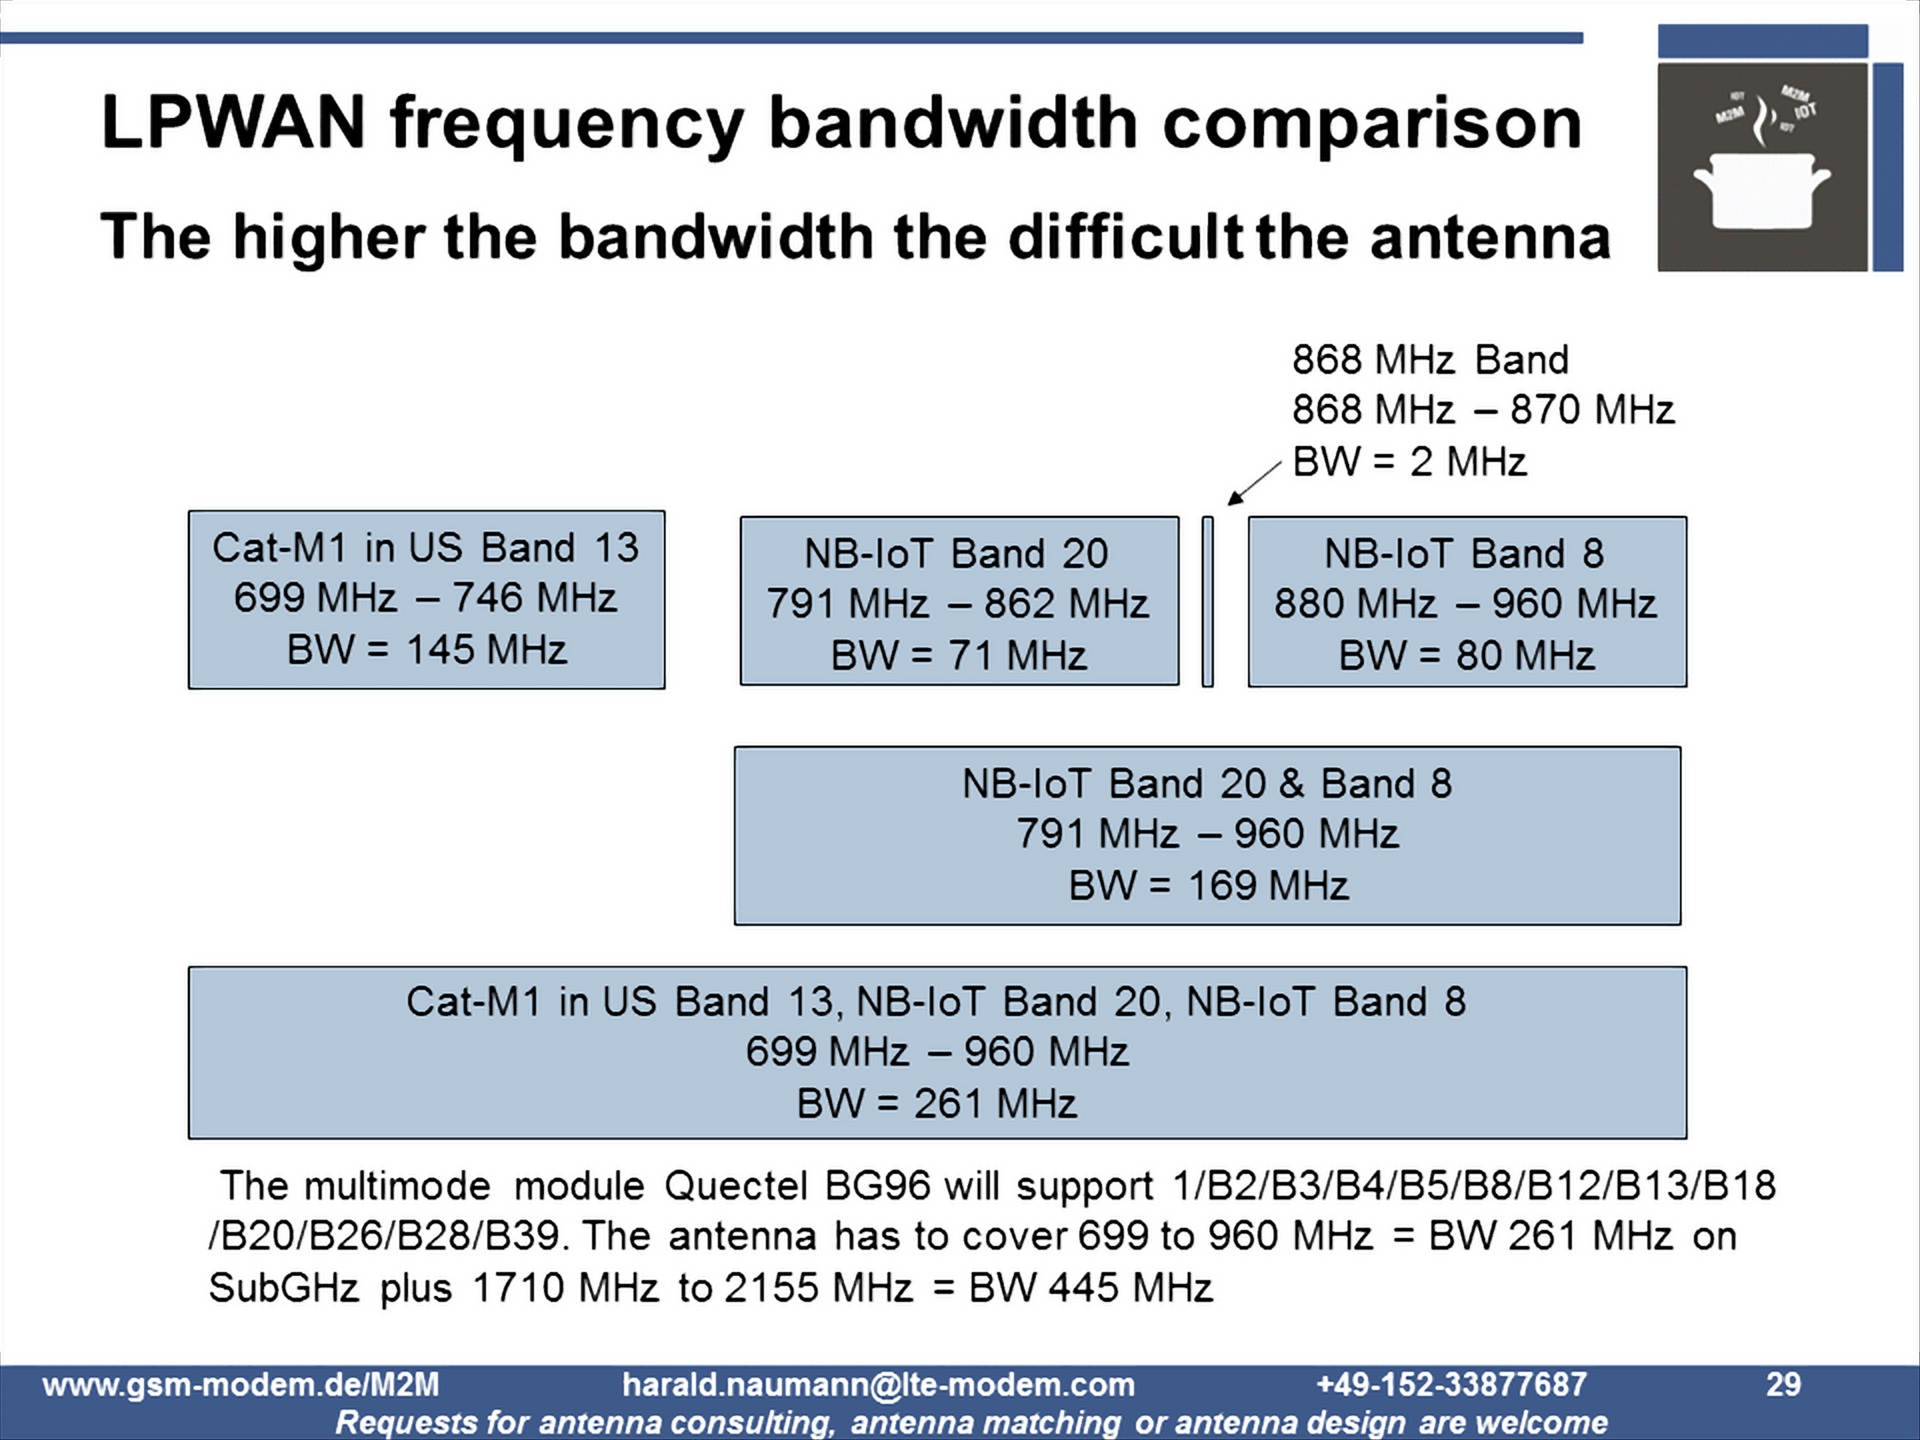 LPWA frequencies in comparison